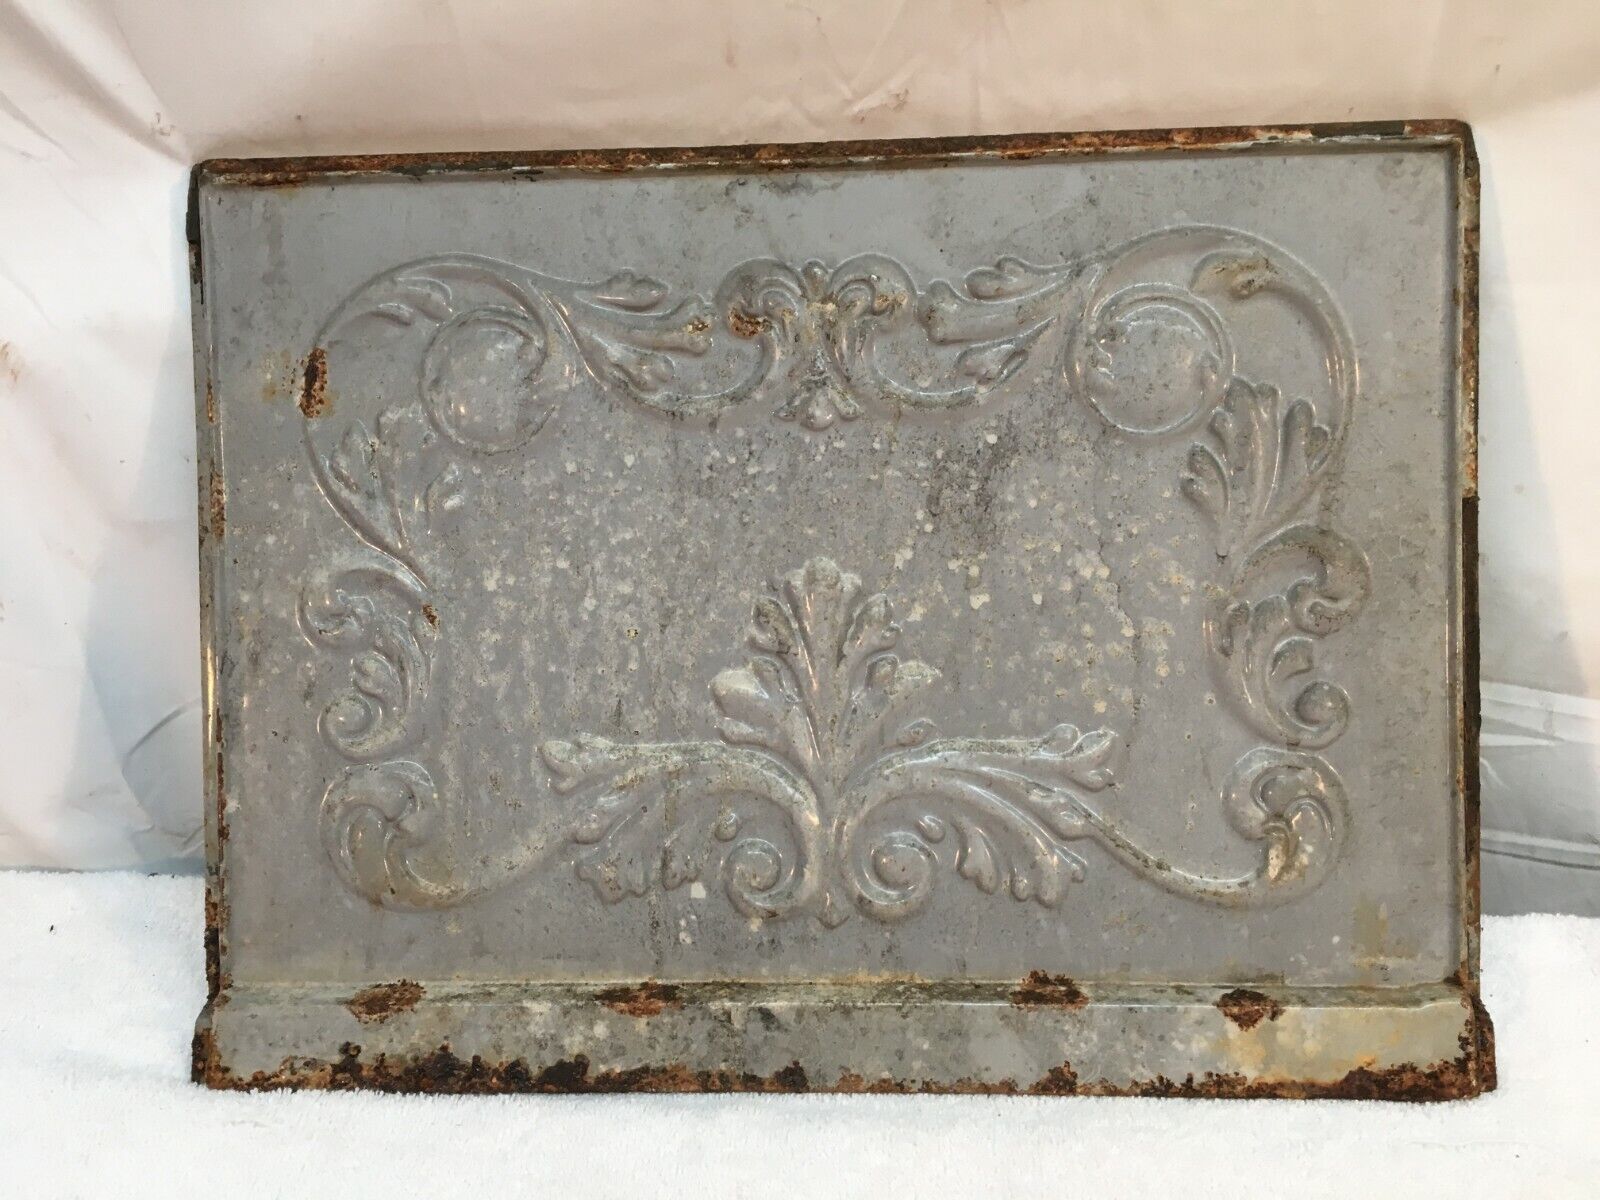 Antique Cast Iron Stove Door - Ornate Decorative Oven Door Steampunk Garden Art